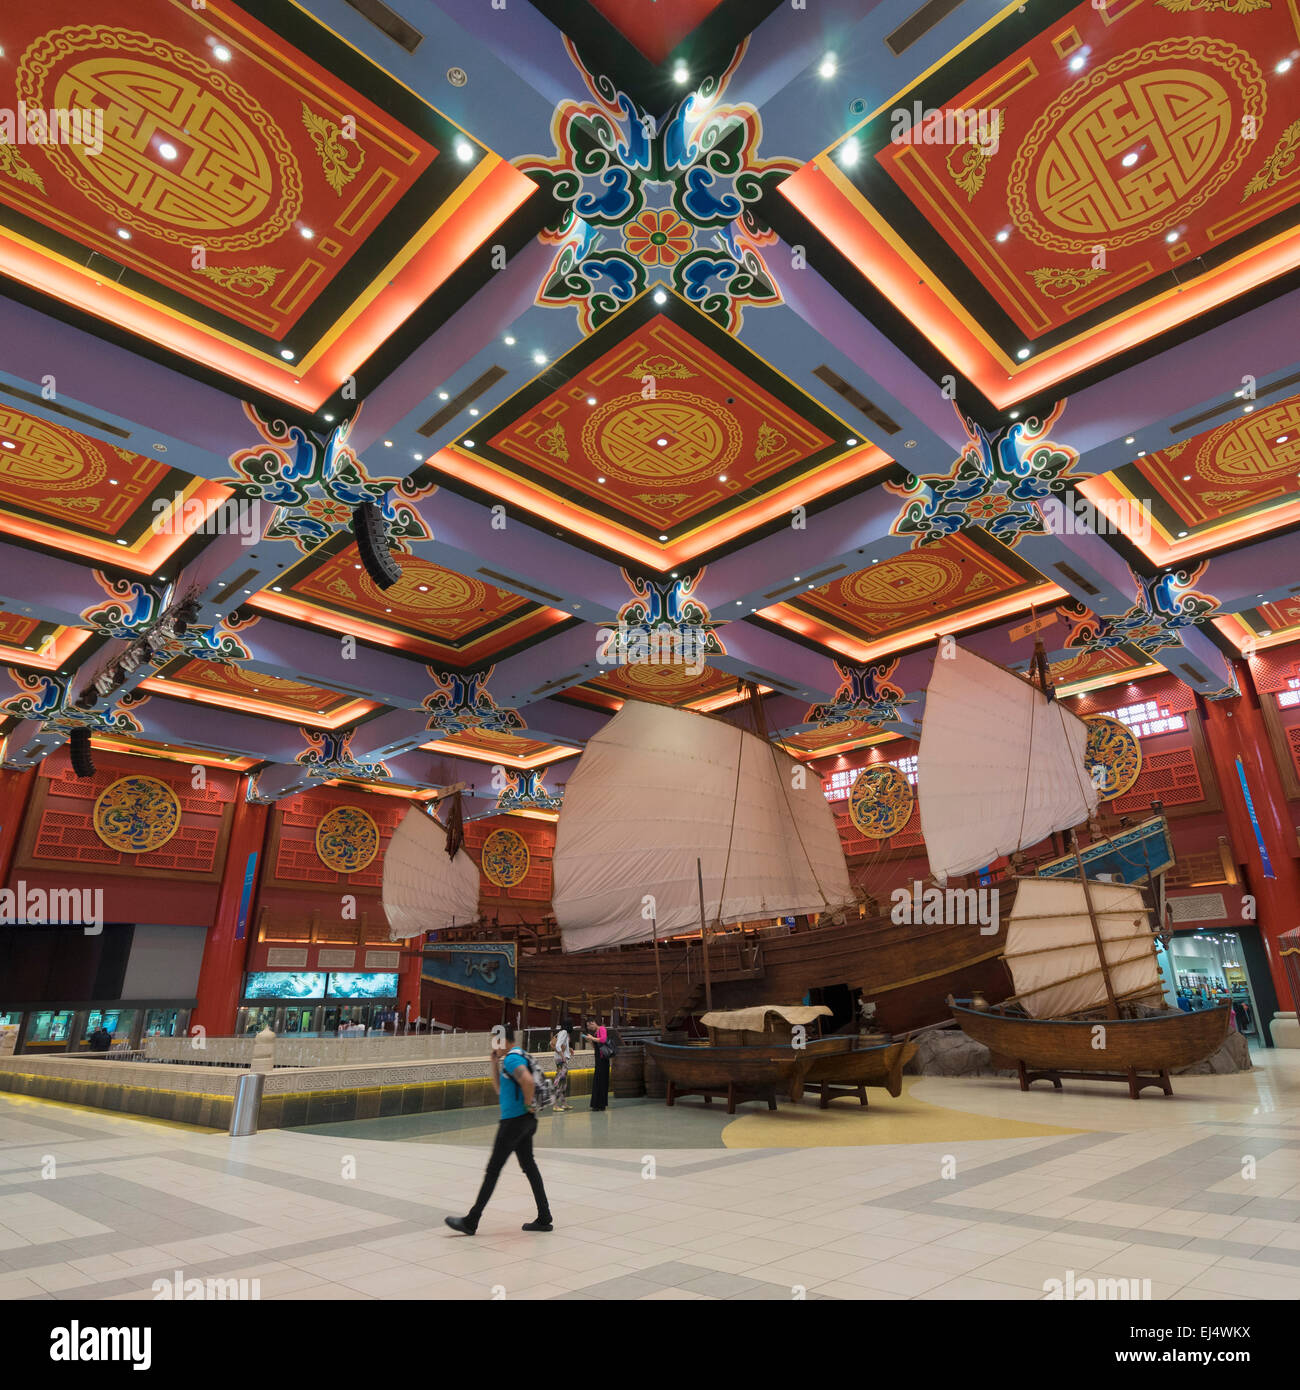 Intérieur de la Cour de la Chine à l'Ibn Battuta Shopping Mall à Dubaï Émirats Arabes Unis Banque D'Images